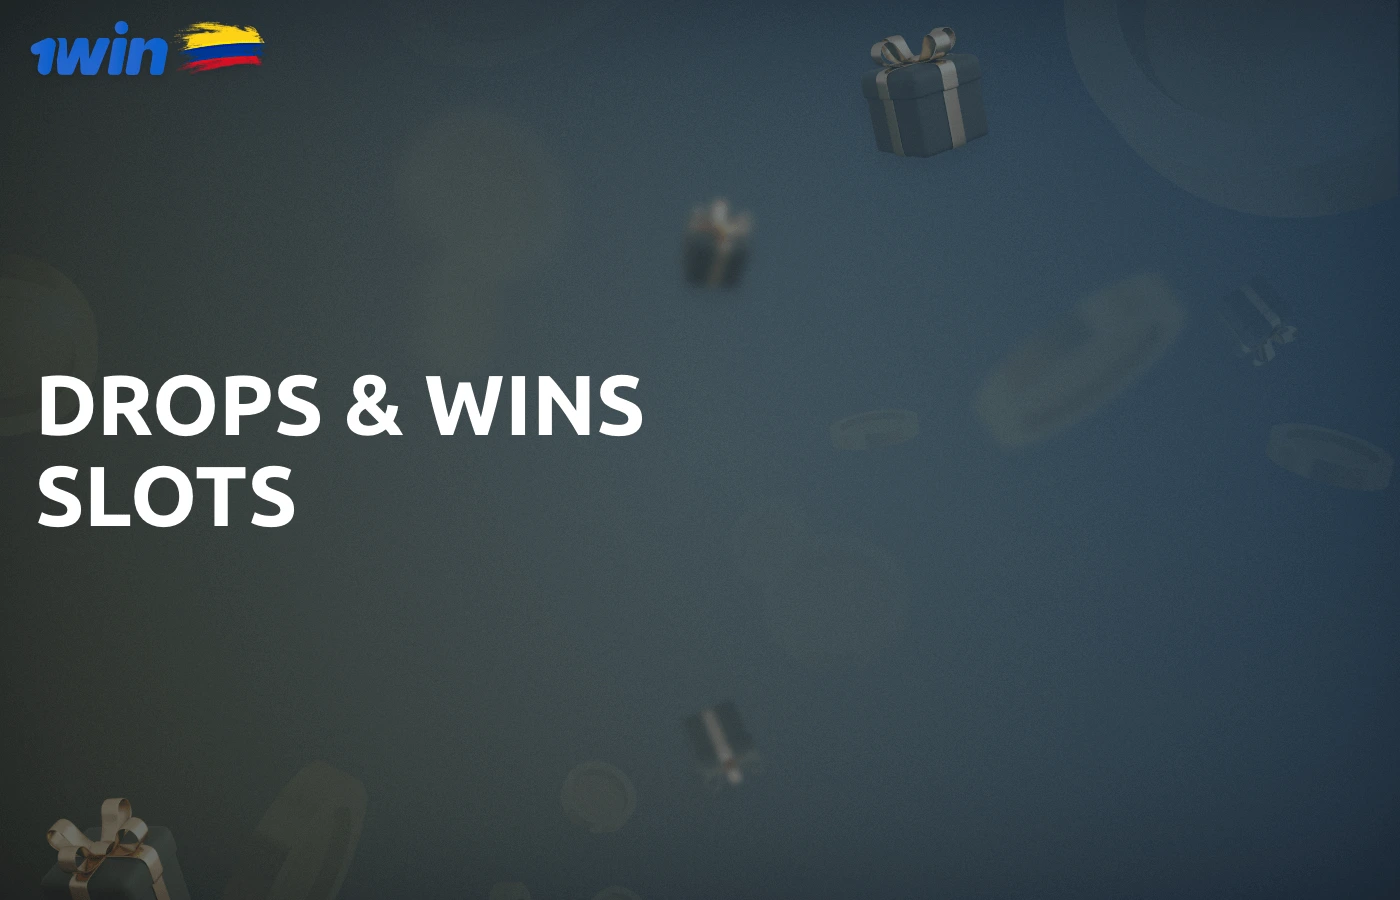 Para los aficionados a las máquinas tragaperras, 1win tiene una promoción especial: Drops & Wins slots